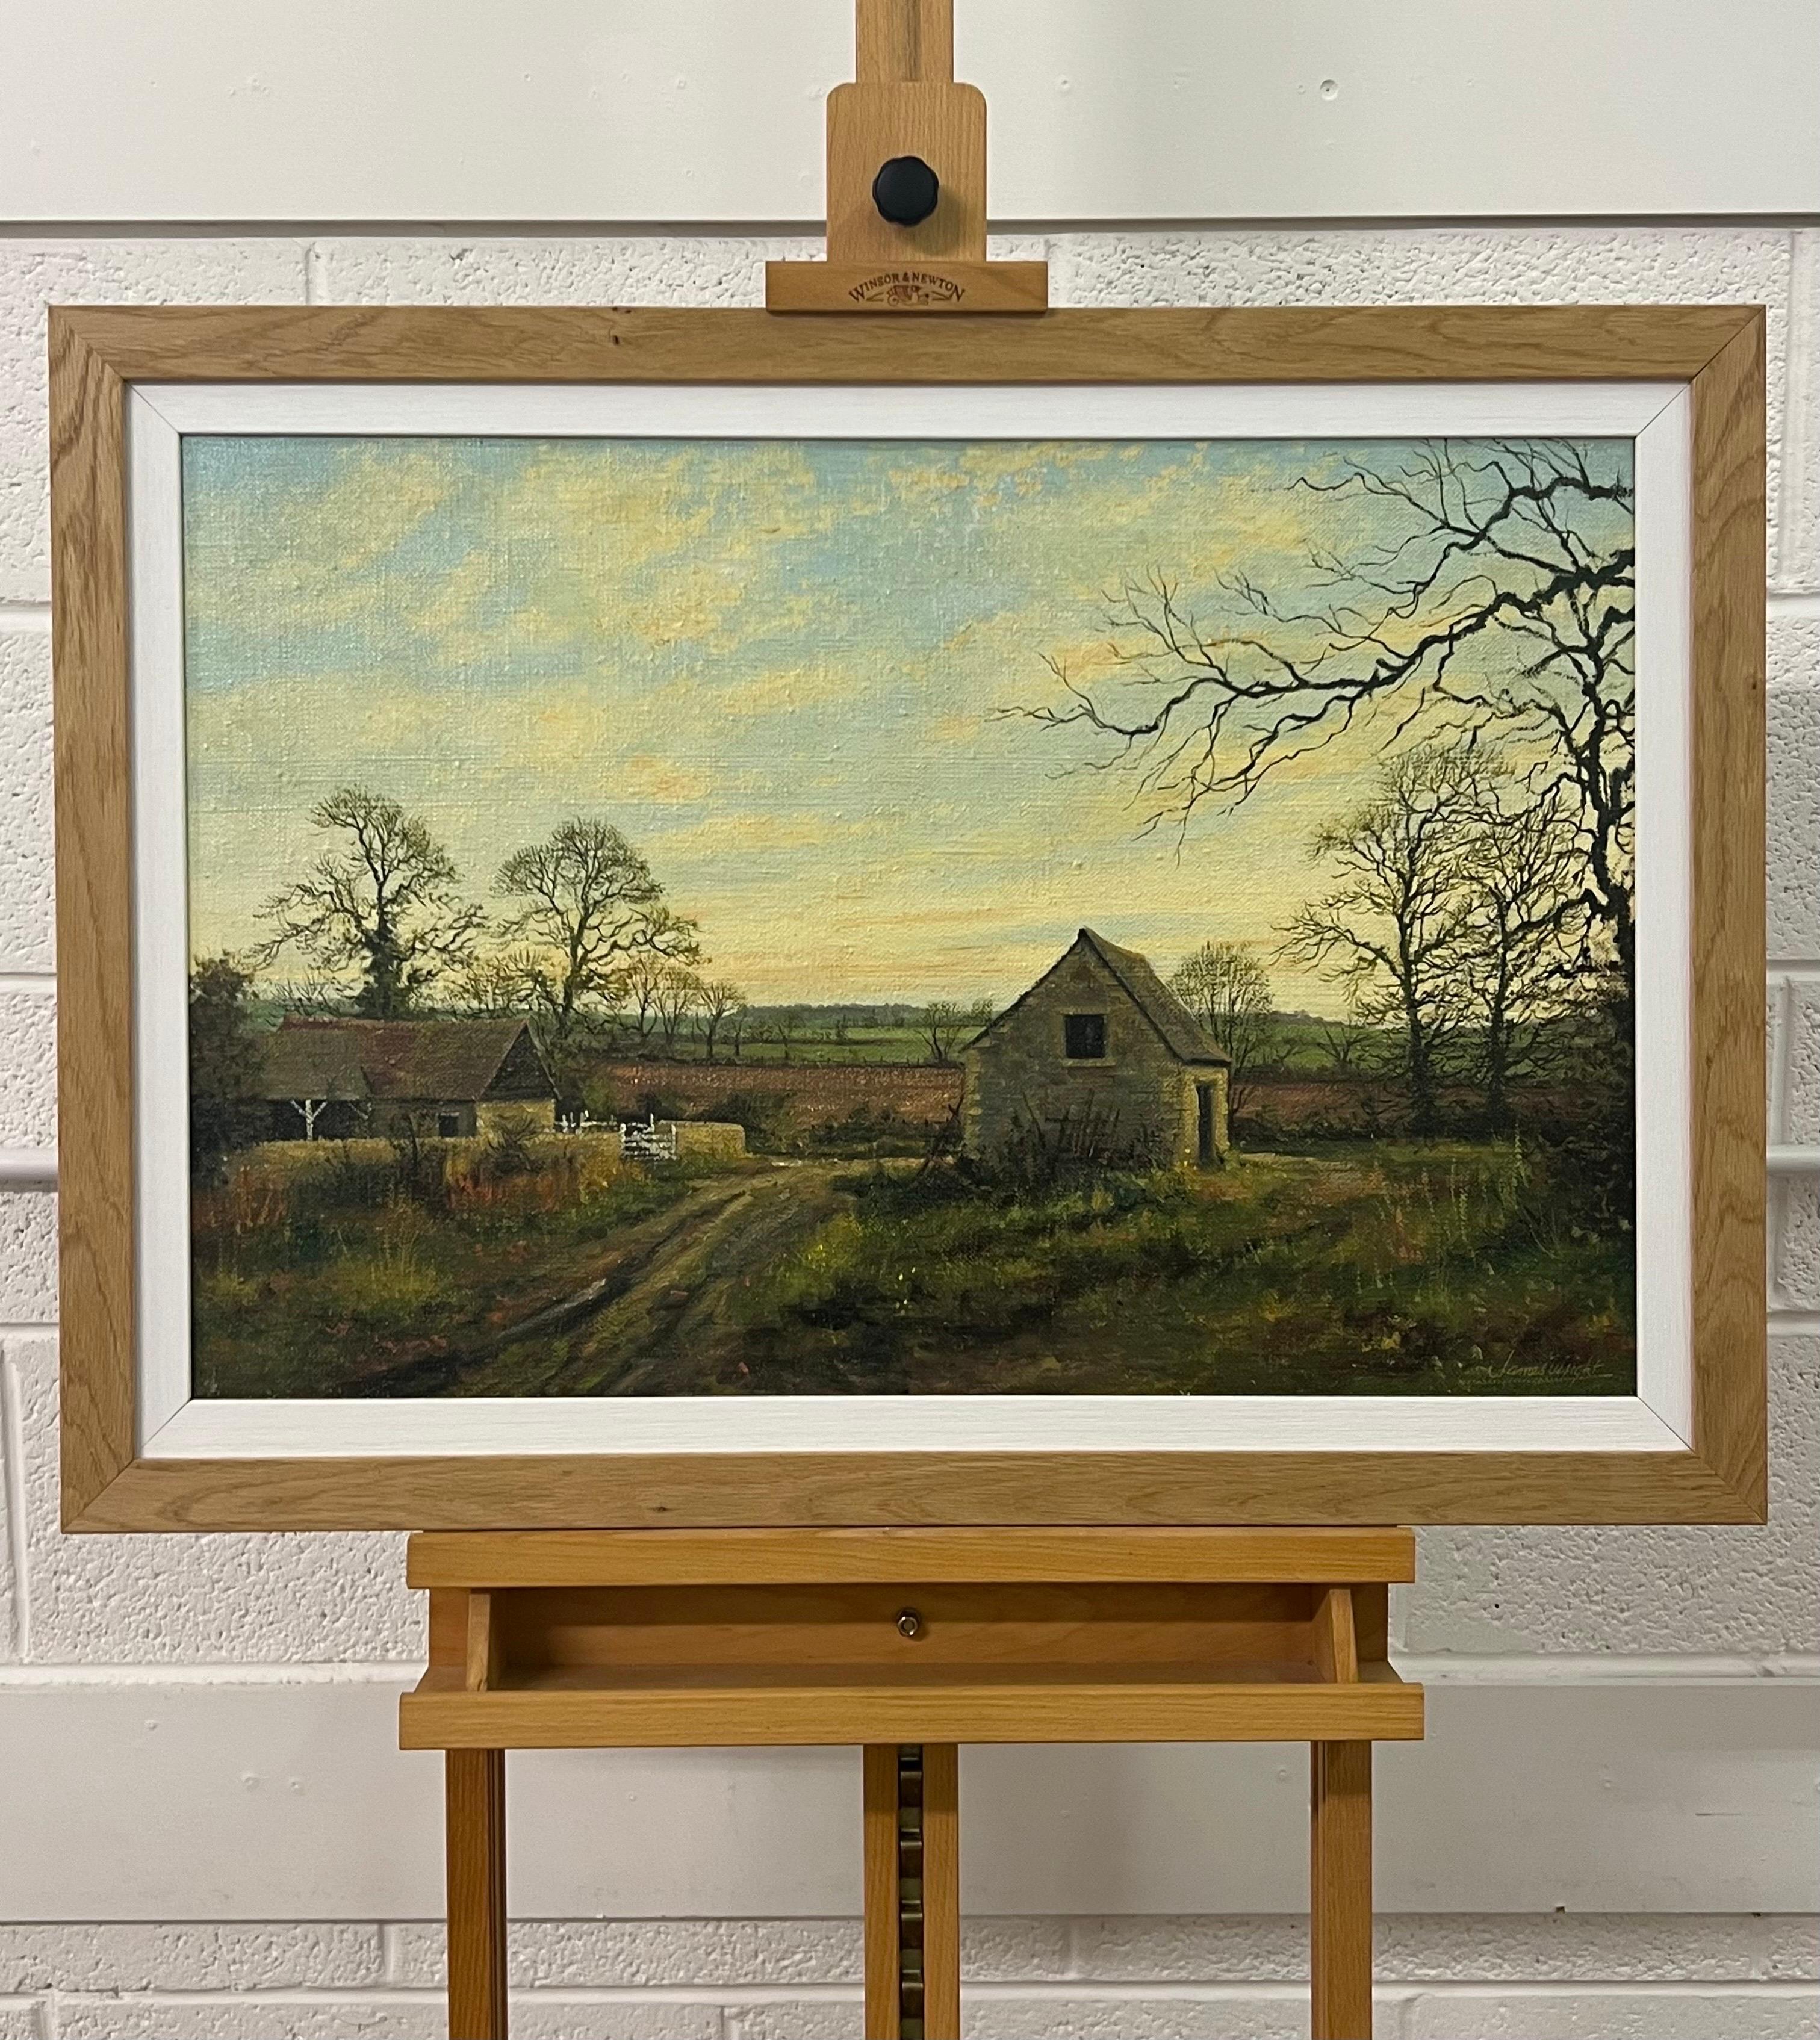 Alte Scheunenszene eines Bauernhofs in der englischen Landschaft des britischen Landschaftsmalers des 20. Jahrhunderts, James Wright.

Signiertes Original im Vintage-Stil, Öl auf grobkörnigem Leinen, gerahmt in einer hochwertigen Leiste aus massivem